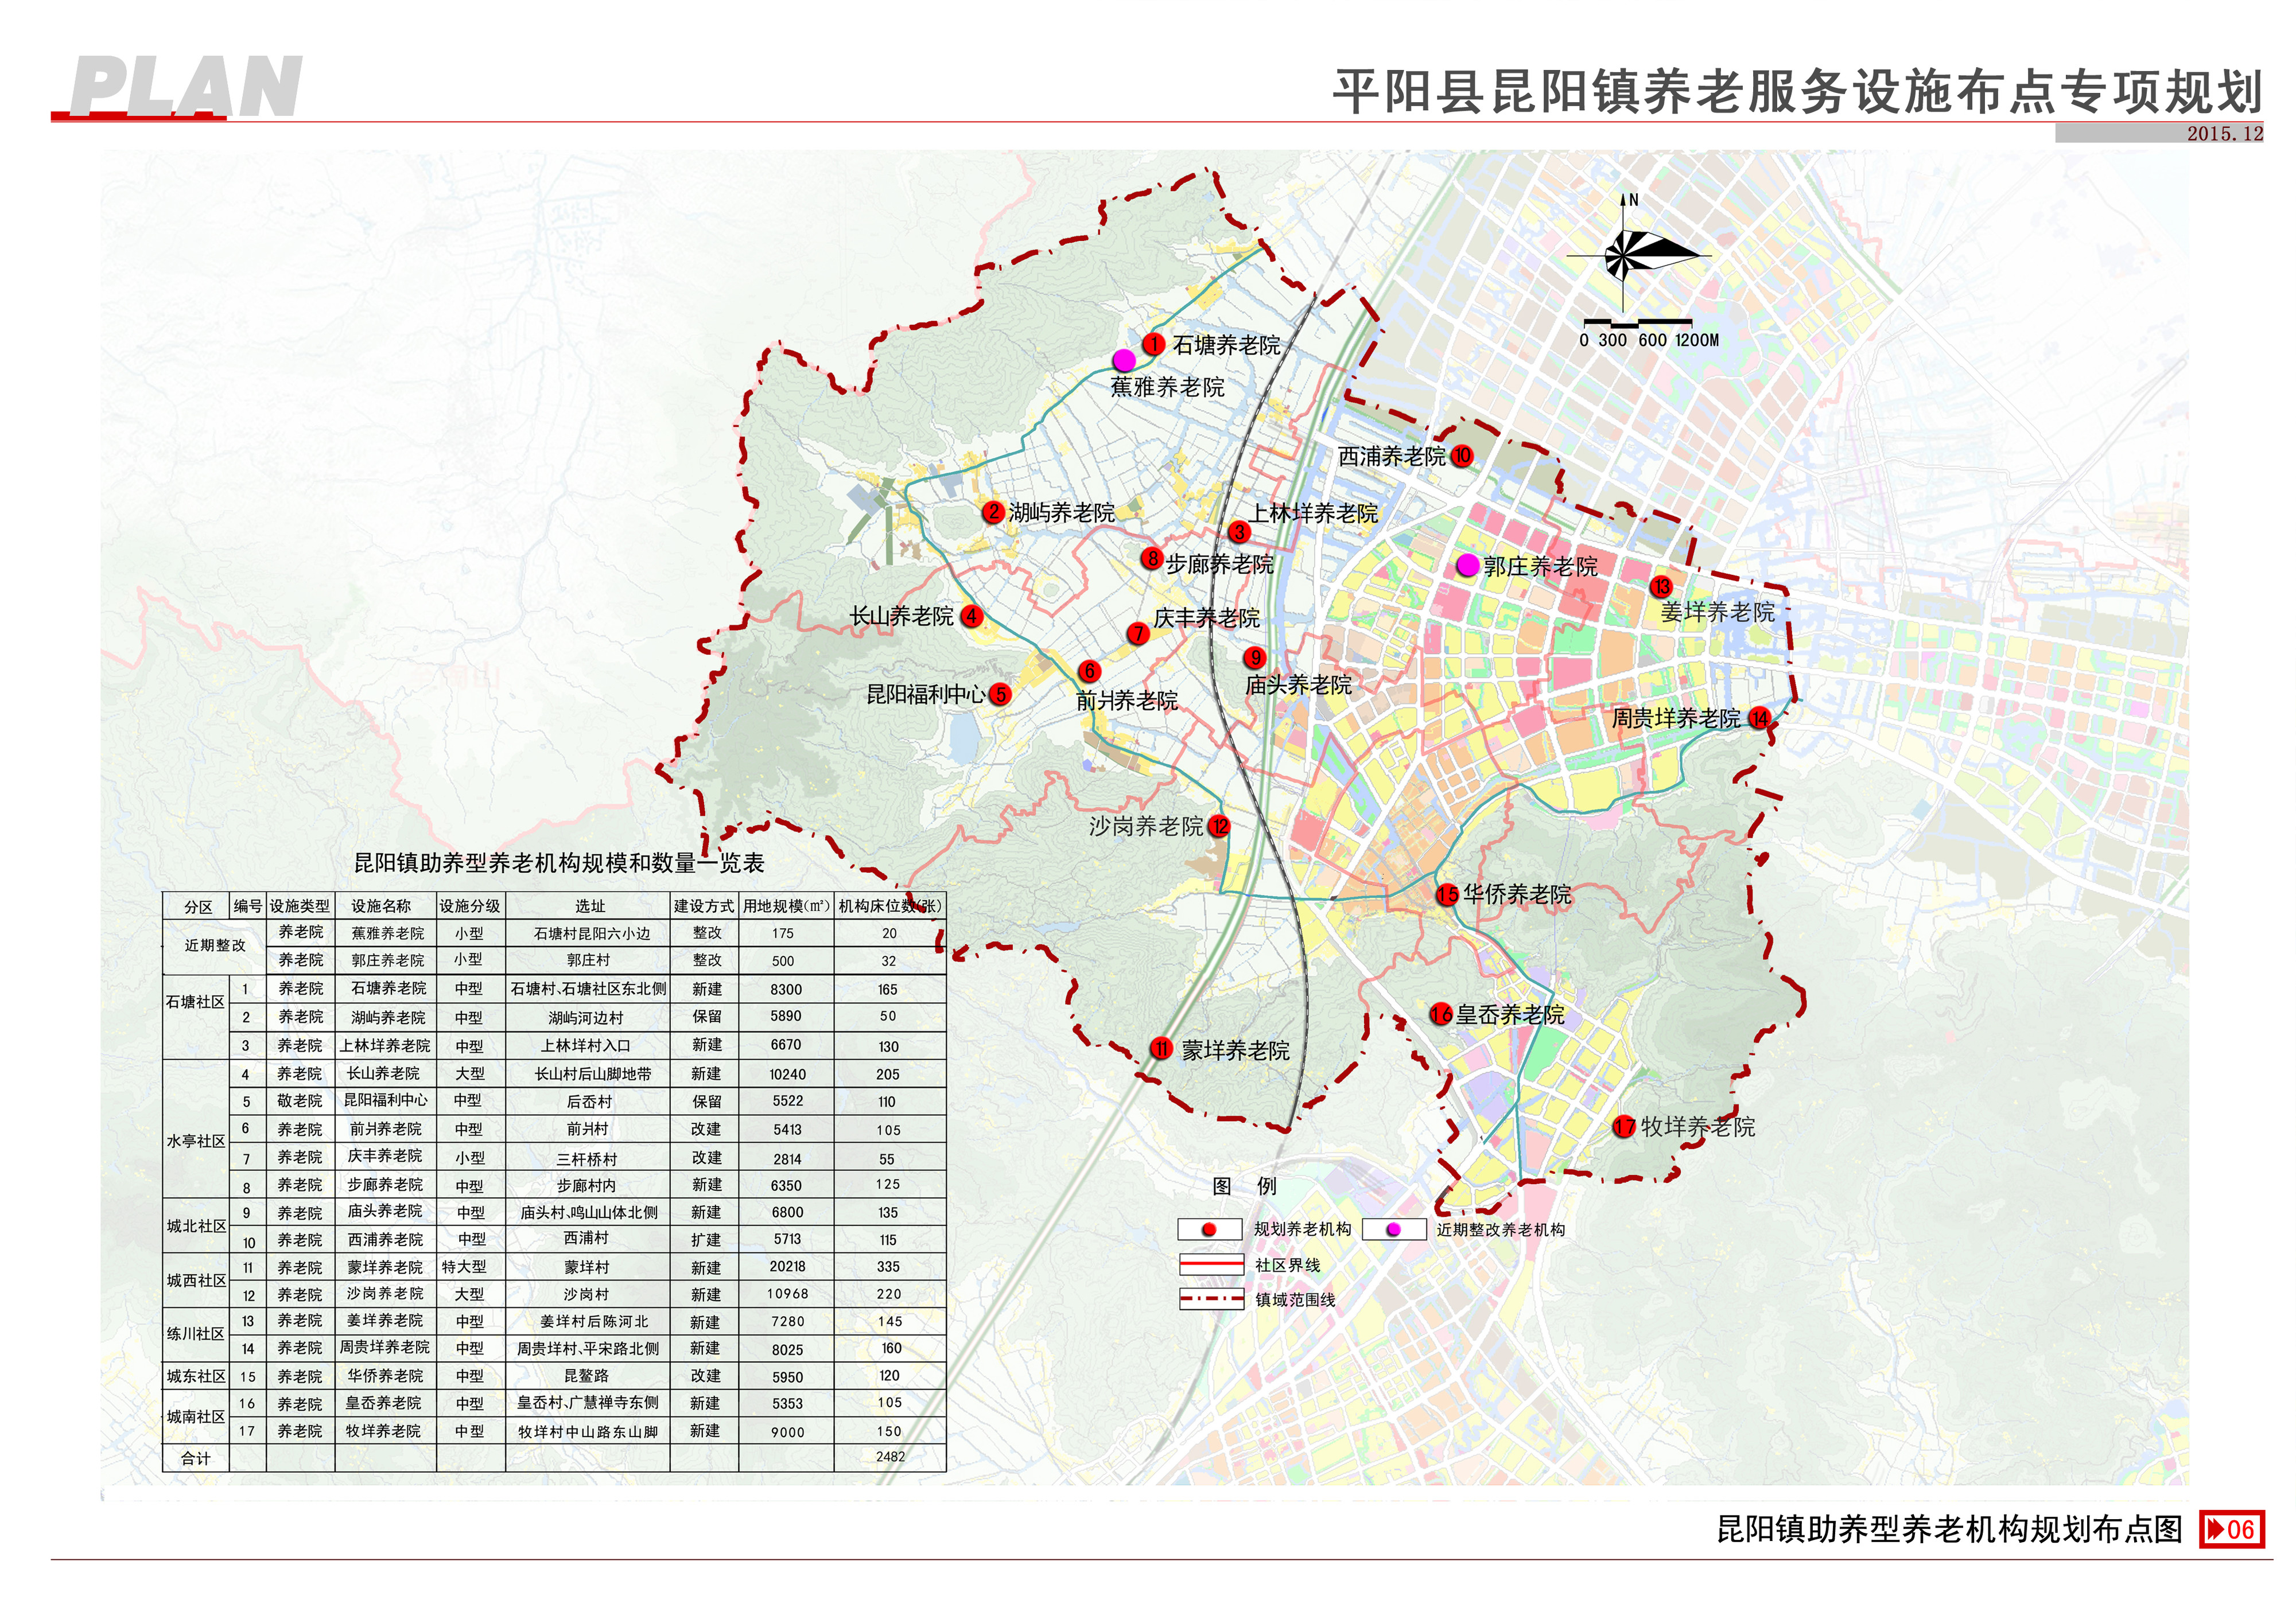 平阳县昆阳镇养老服务设施布点专项规划草案公示